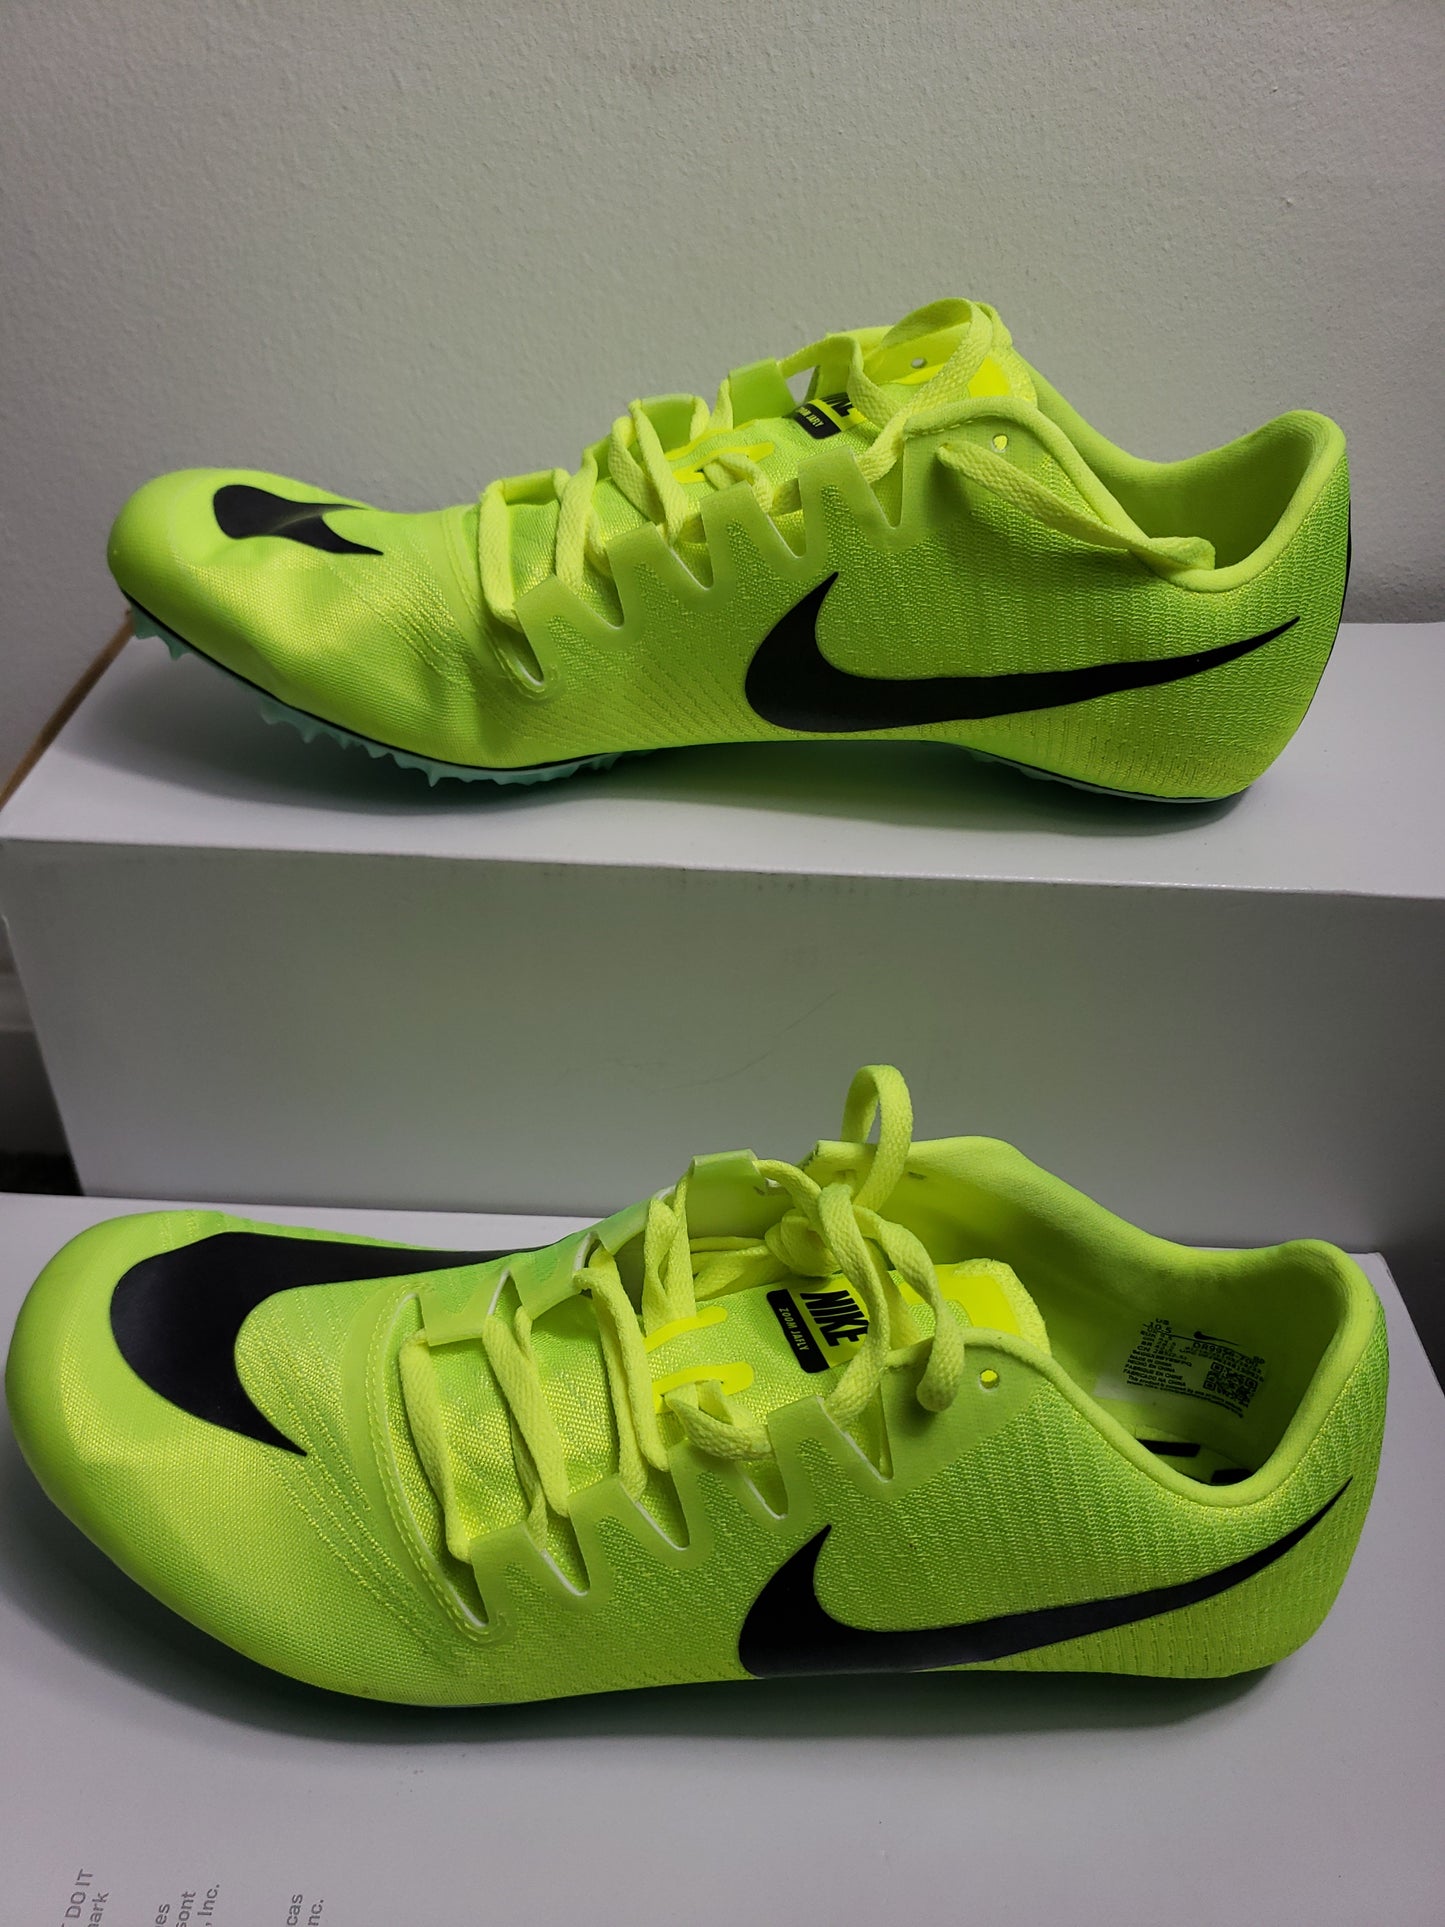 Men's Nike Zoom Ja Fly 3 ‘Volt’ Track Cleats DR9956-700